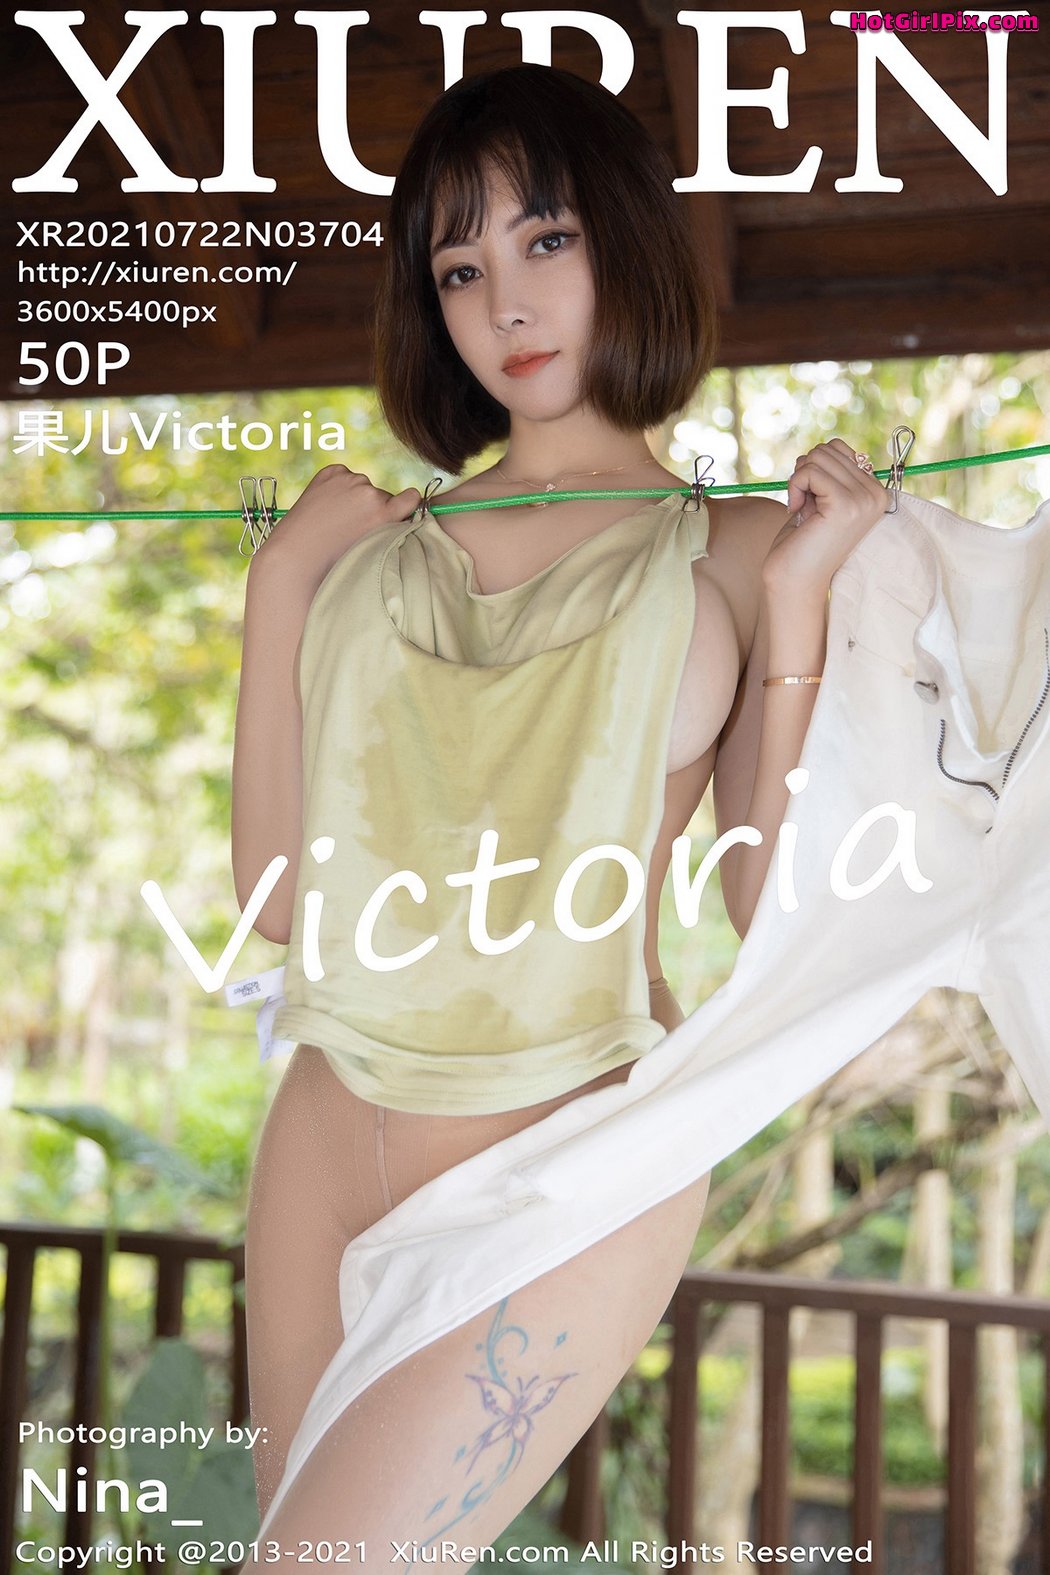 [XIUREN] No.3704 Victoria 果儿 Cover Photo